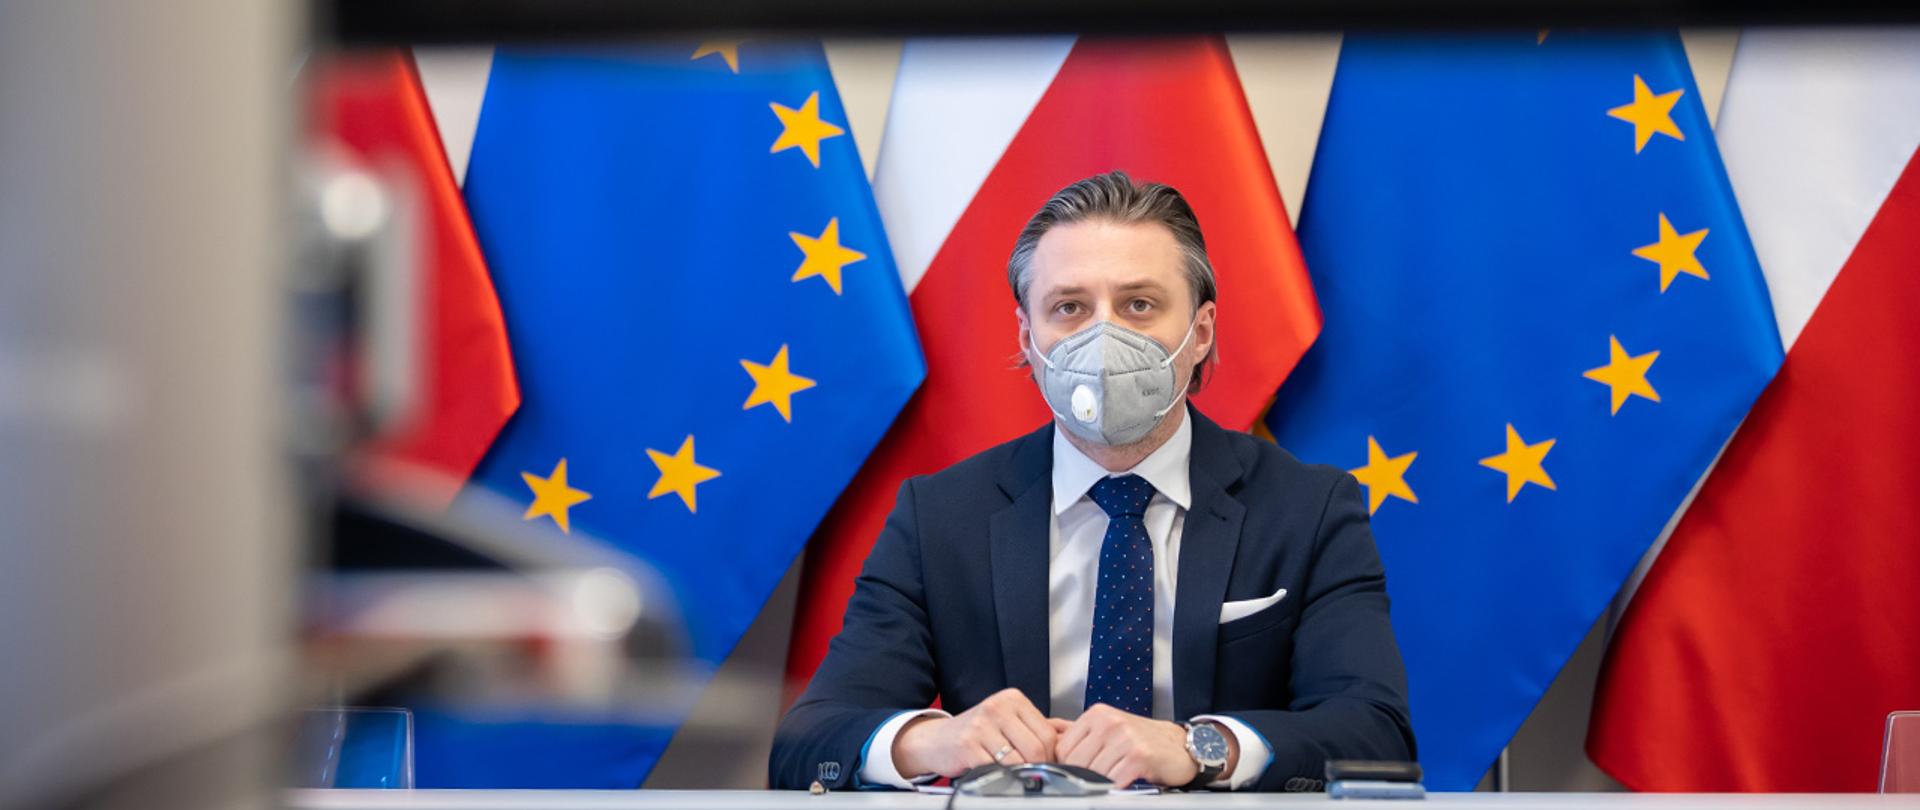 Na zdjęciu widać wiceministra Bartosza Grodeckiego wpatrzonego w ekran siedzącego na tle flag Polski i UE